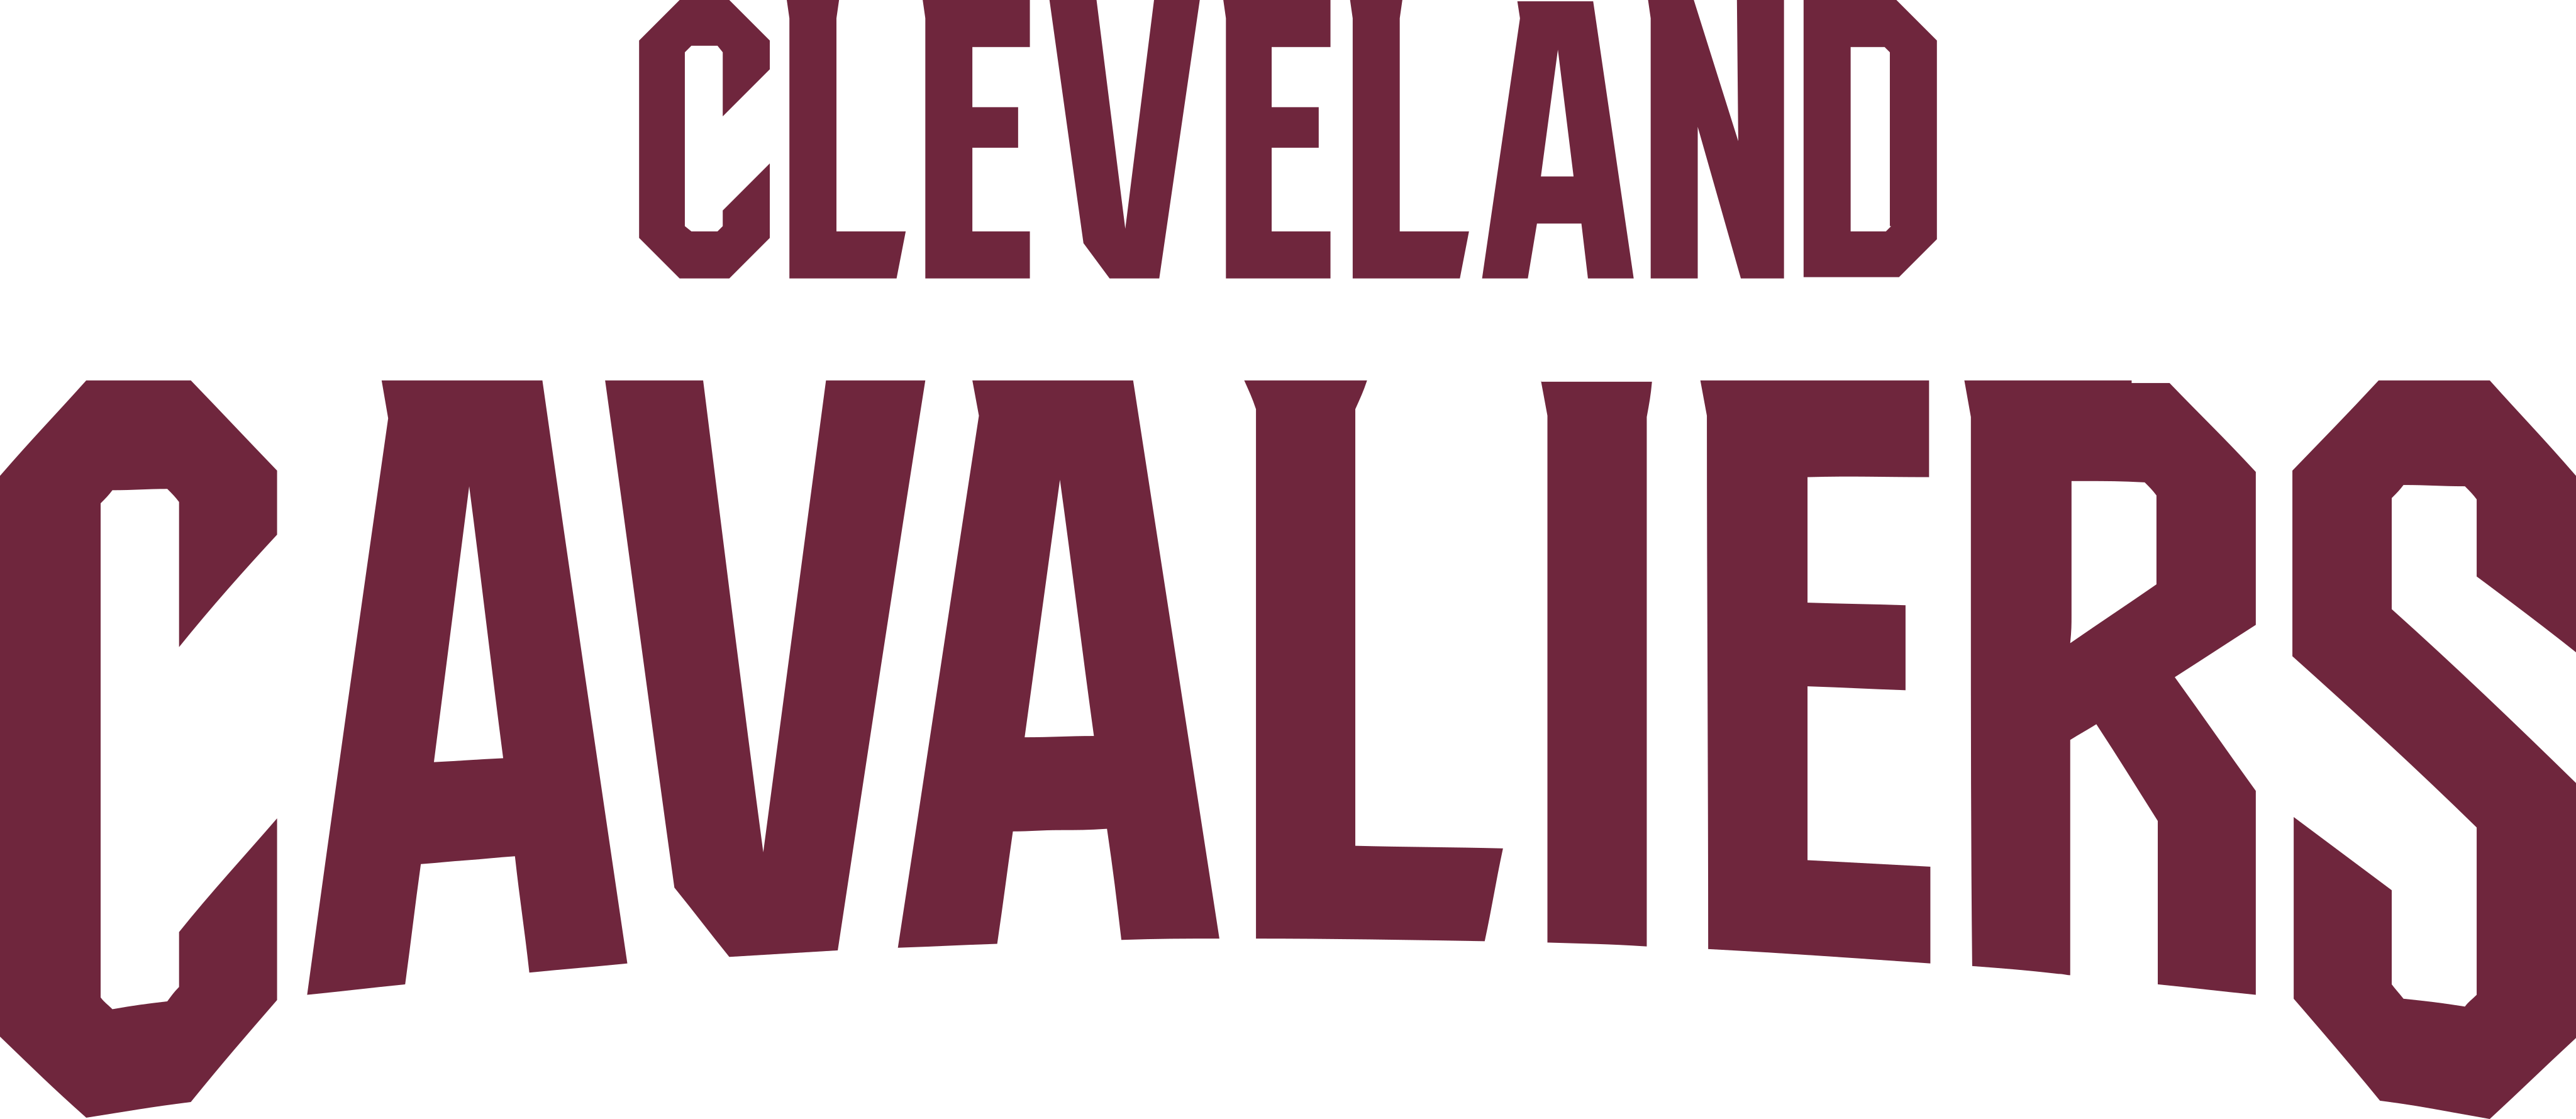 cleveland cavaliers logo 2 - Cleveland Cavaliers Logo